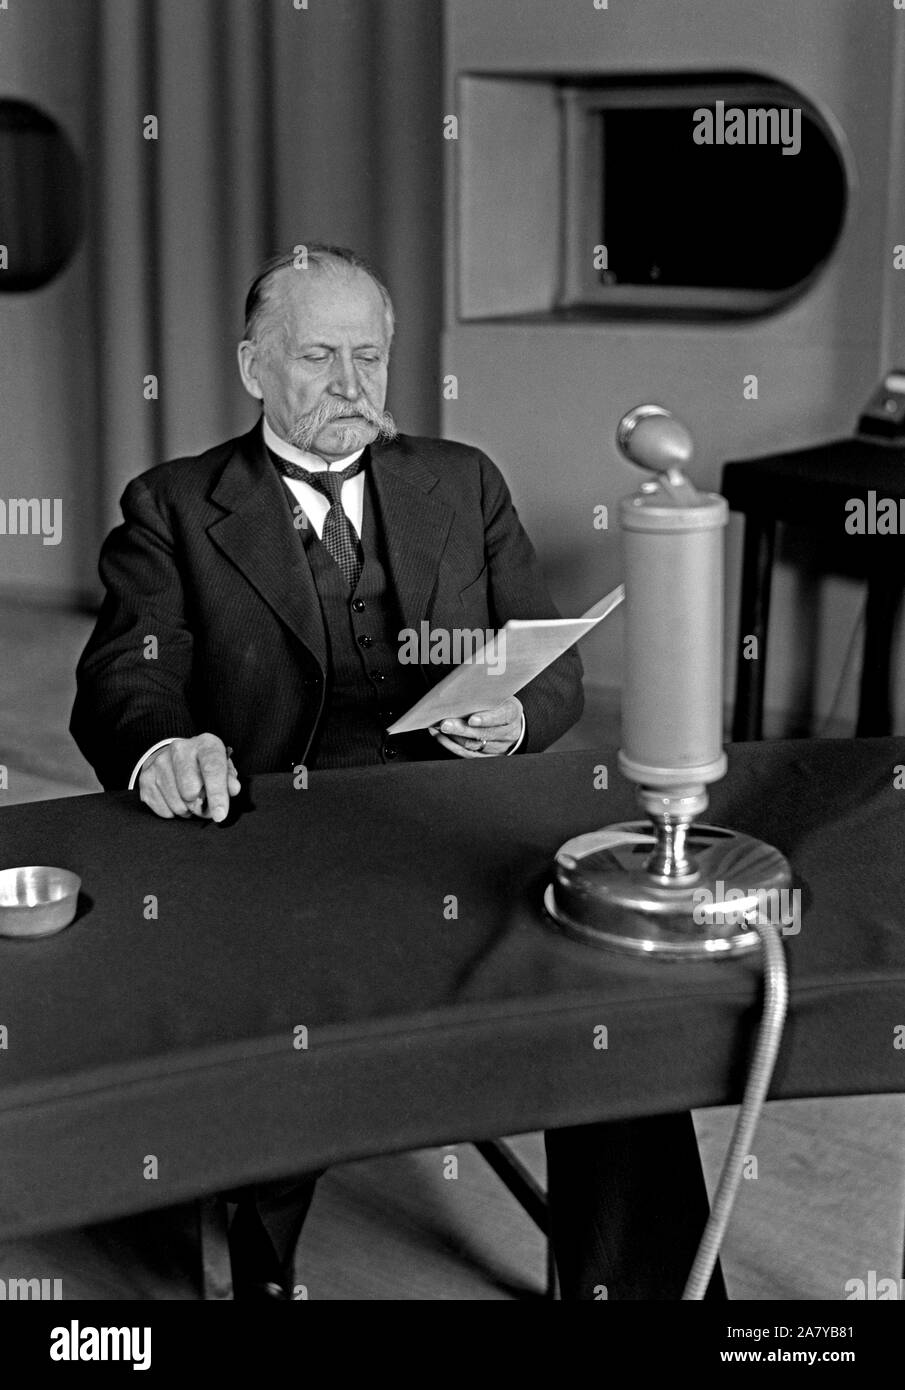 President Kyösti Kallio speaking on the radio, 1930s. Stock Photo